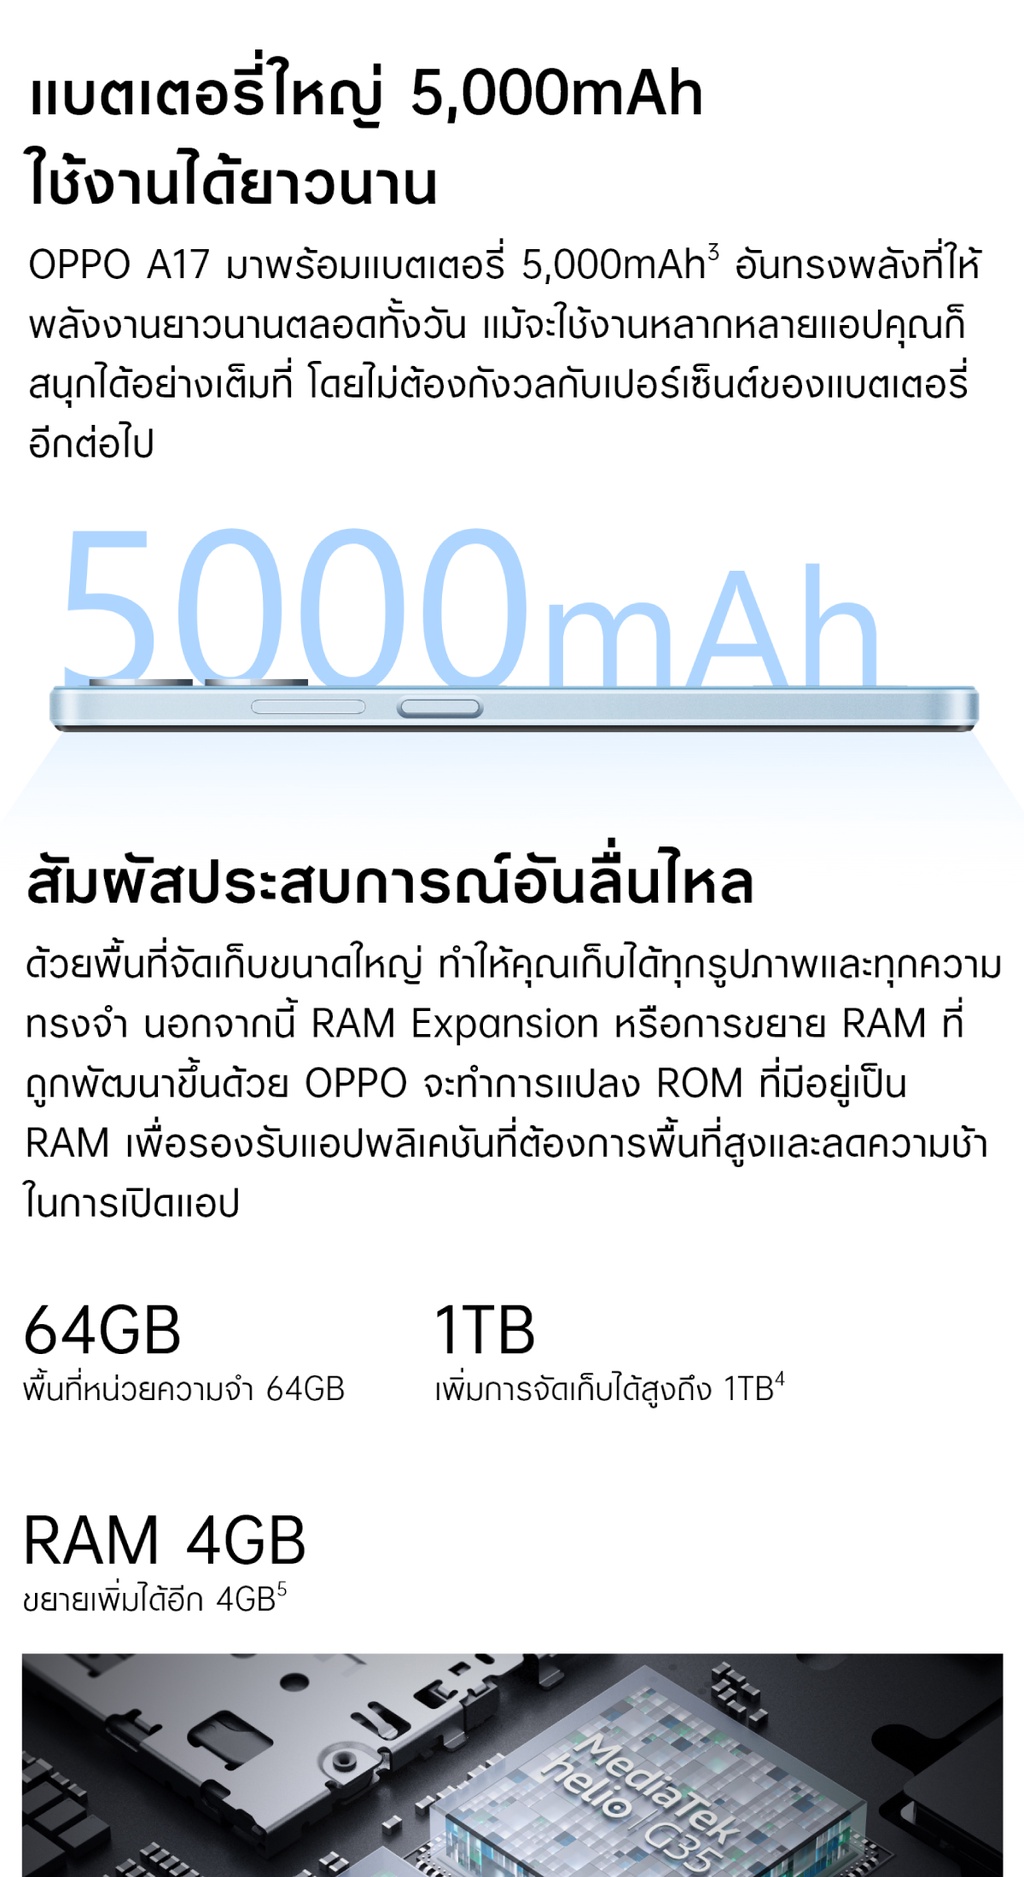 เกี่ยวกับ OPPO A17 (4+64)  โทรศัพท์มือถือ ขยายแรมได้สูงสุด 4GB แบตเตอรี่ใหญ่ ดีไซน์พรีเมียม